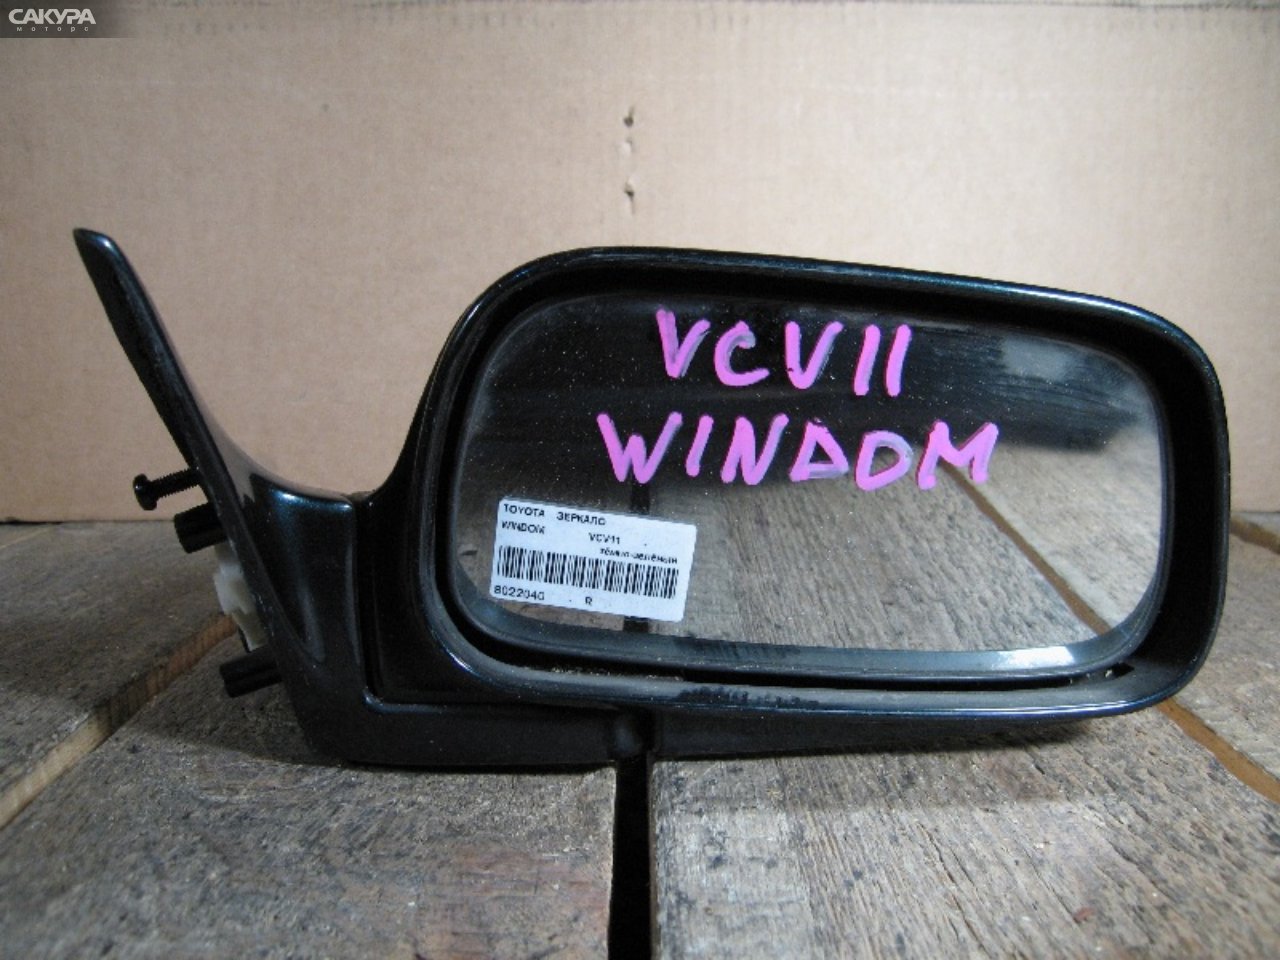 Зеркало боковое правое Toyota Windom VCV11: купить в Сакура Абакан.